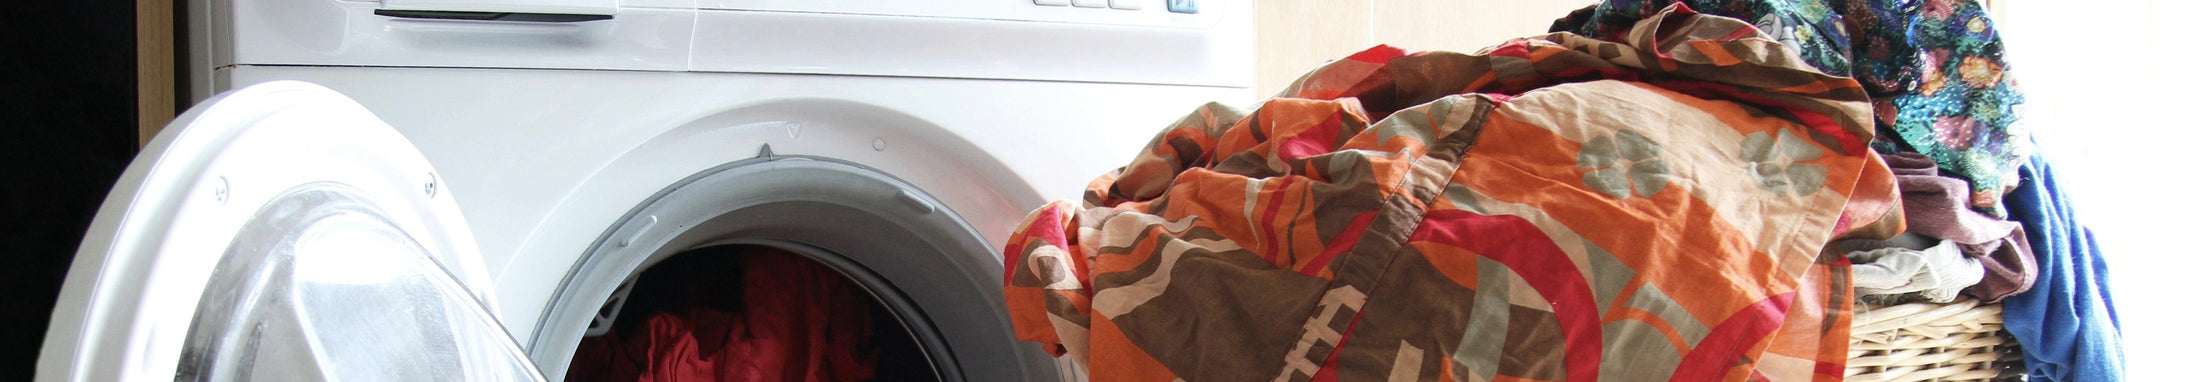 sals suds laundry detergent｜TikTok Search